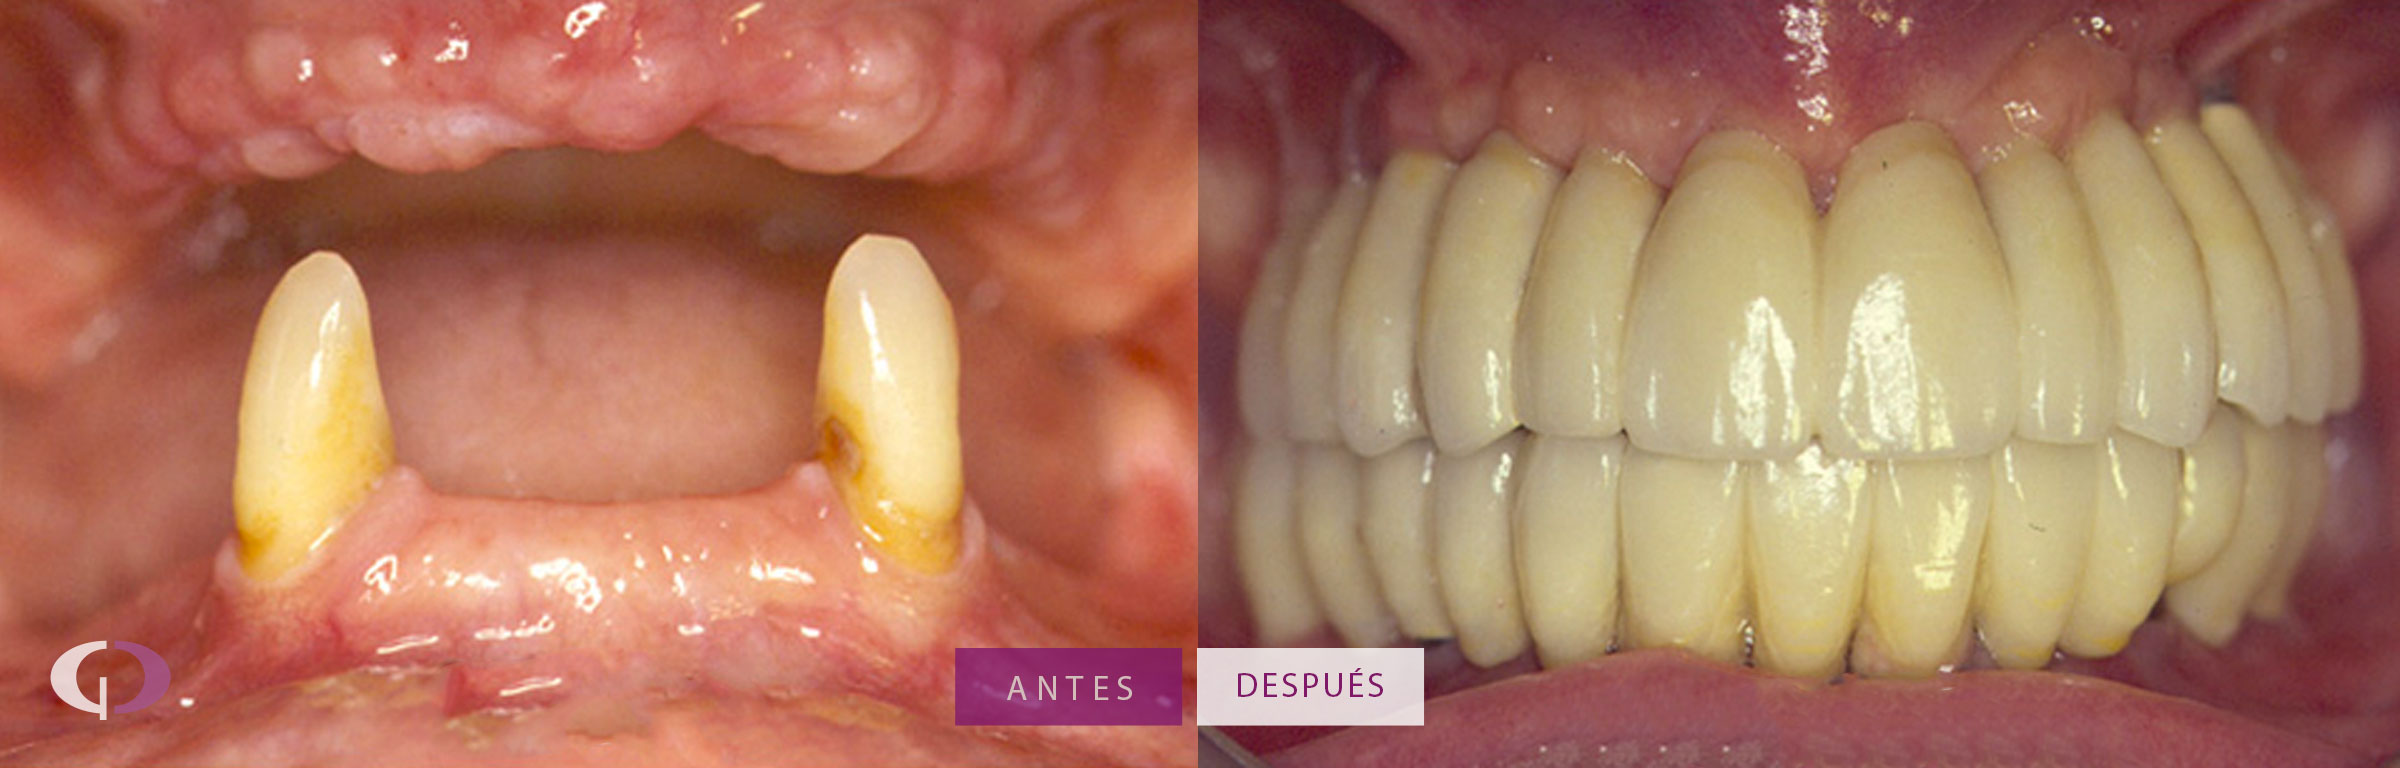 Implantes Dentales antes y después